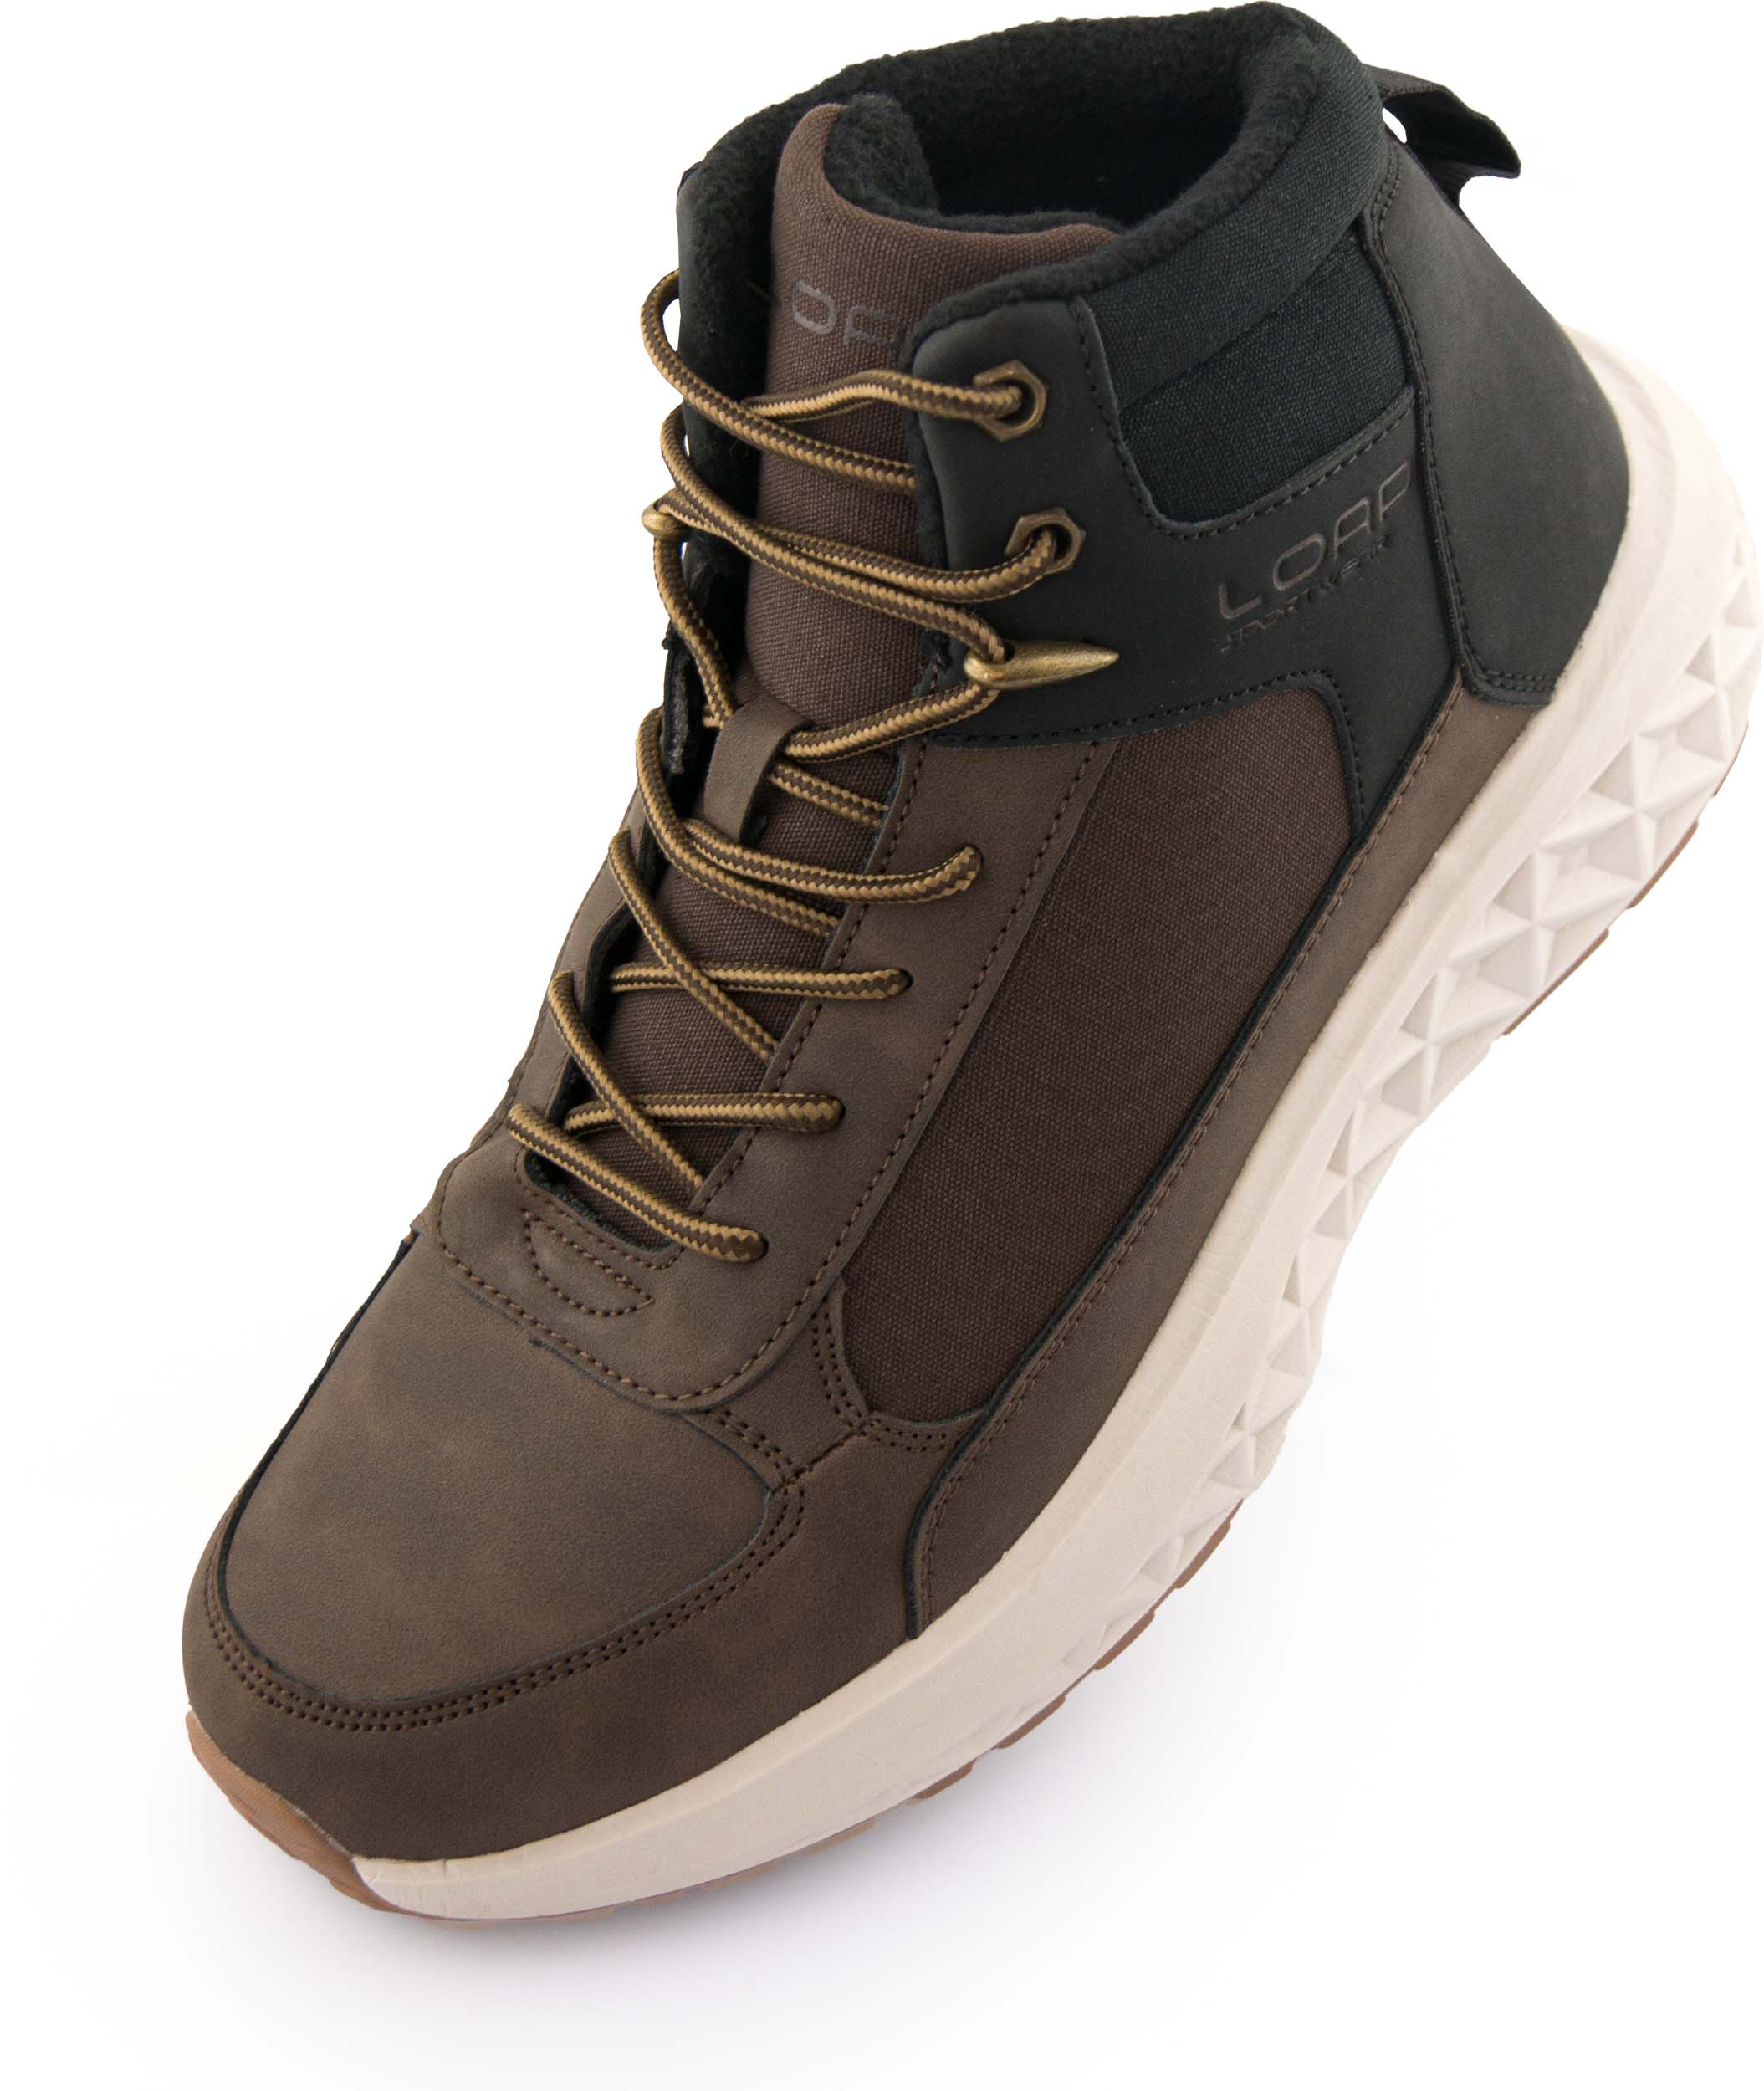 Pánské zimní boty LOAP WESTER brown|44